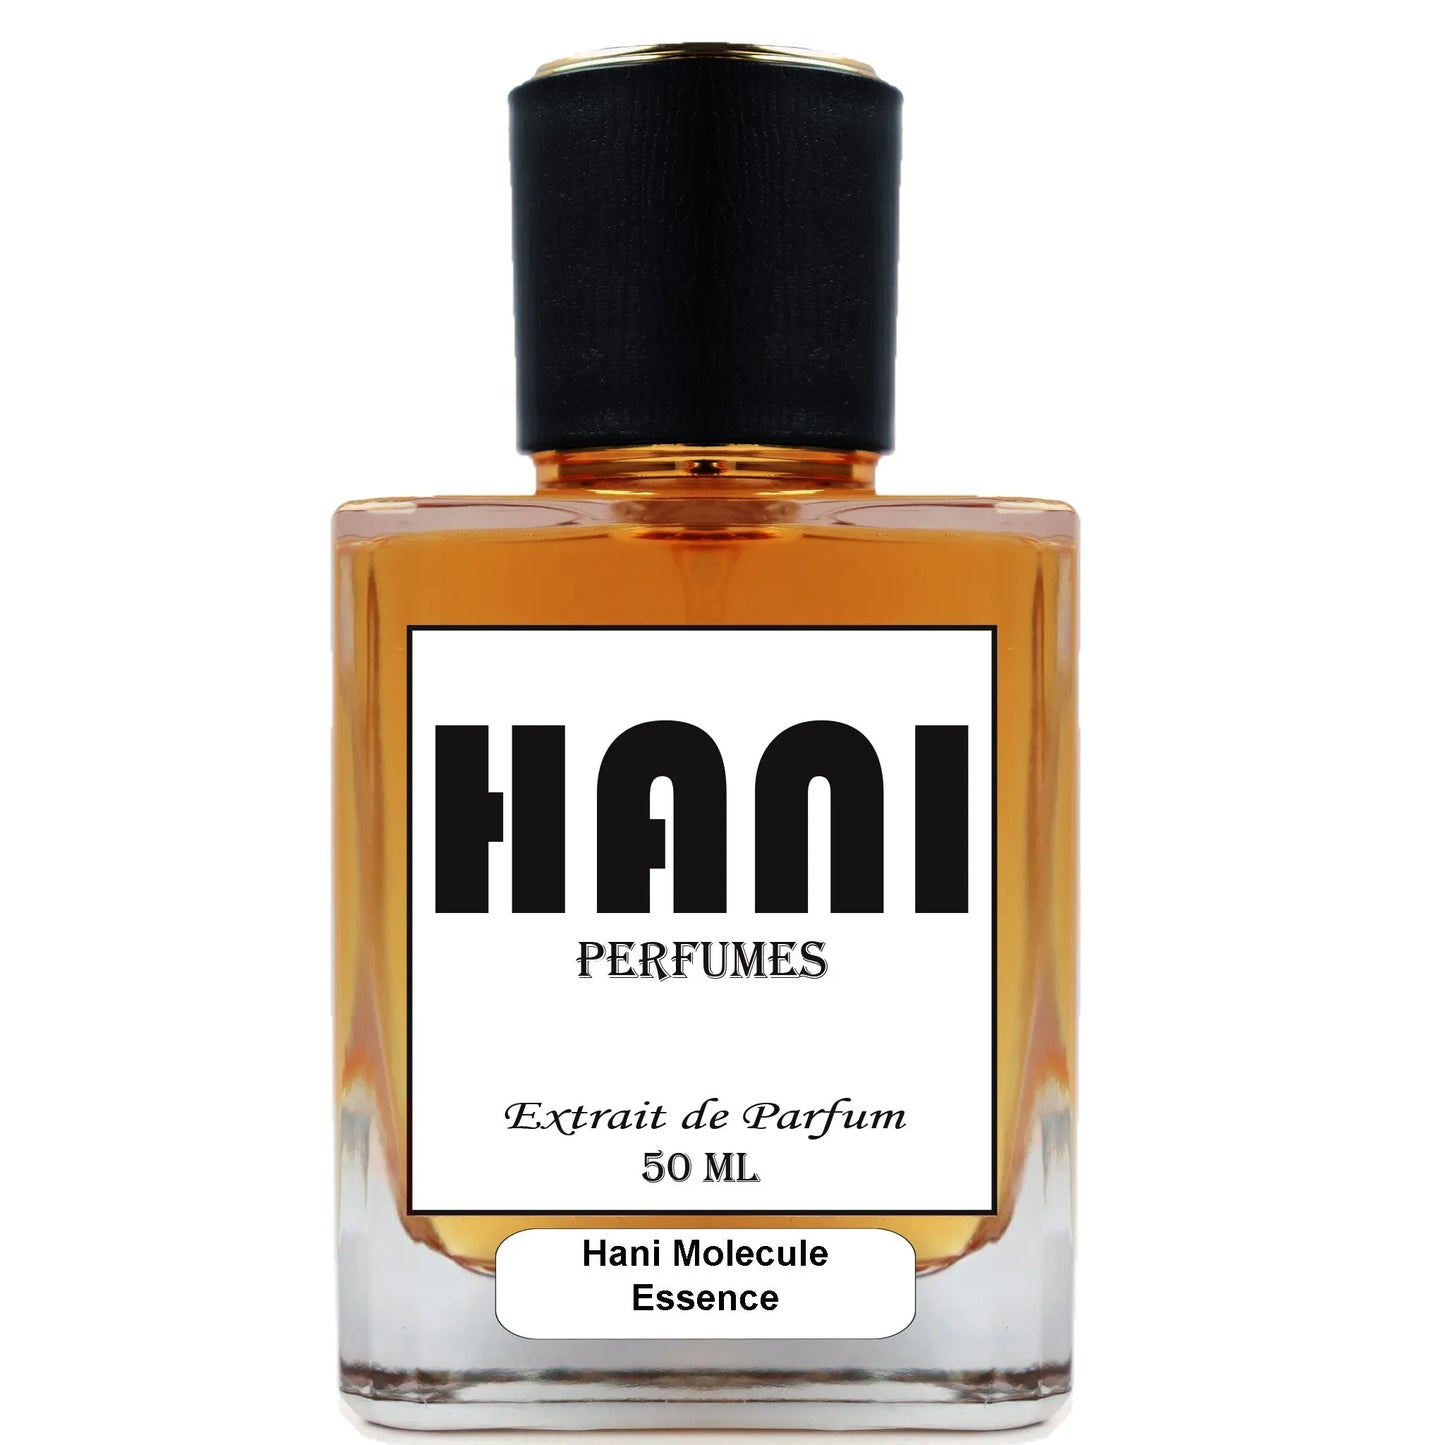 Hani Molecule Essence Unisex Parfum